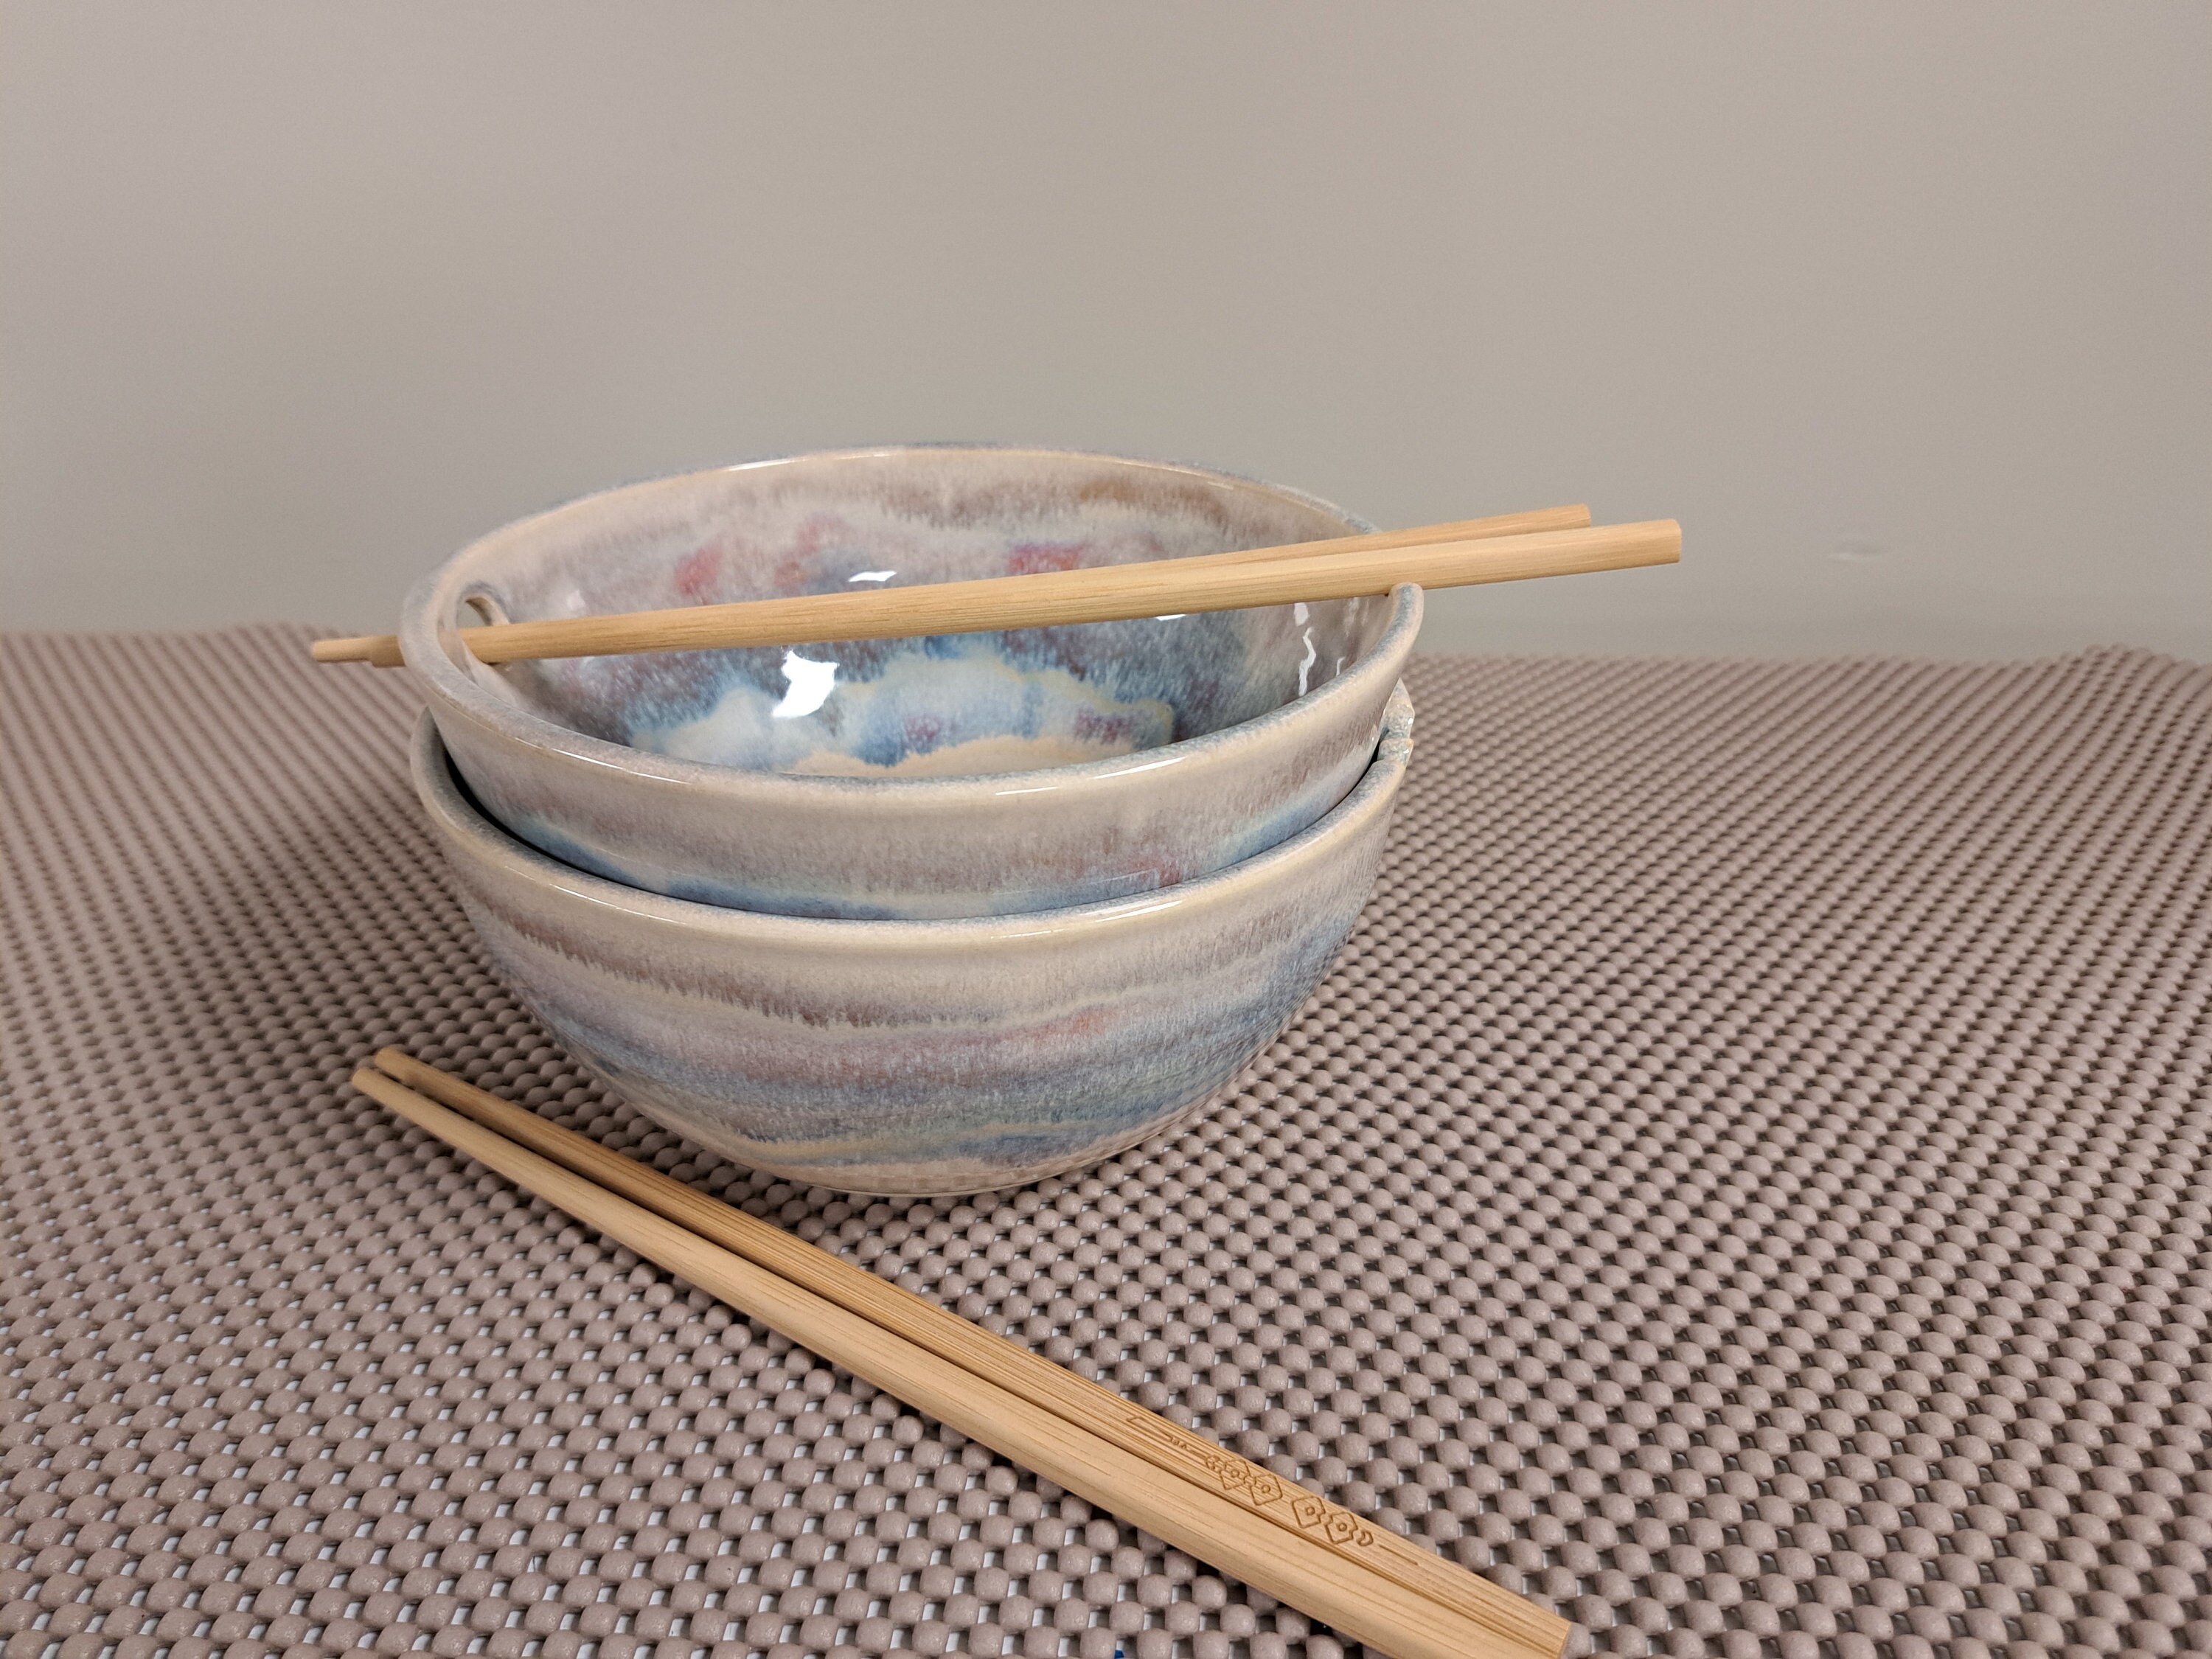 Ceramic Floral Noodle Bowl & Lunch Box